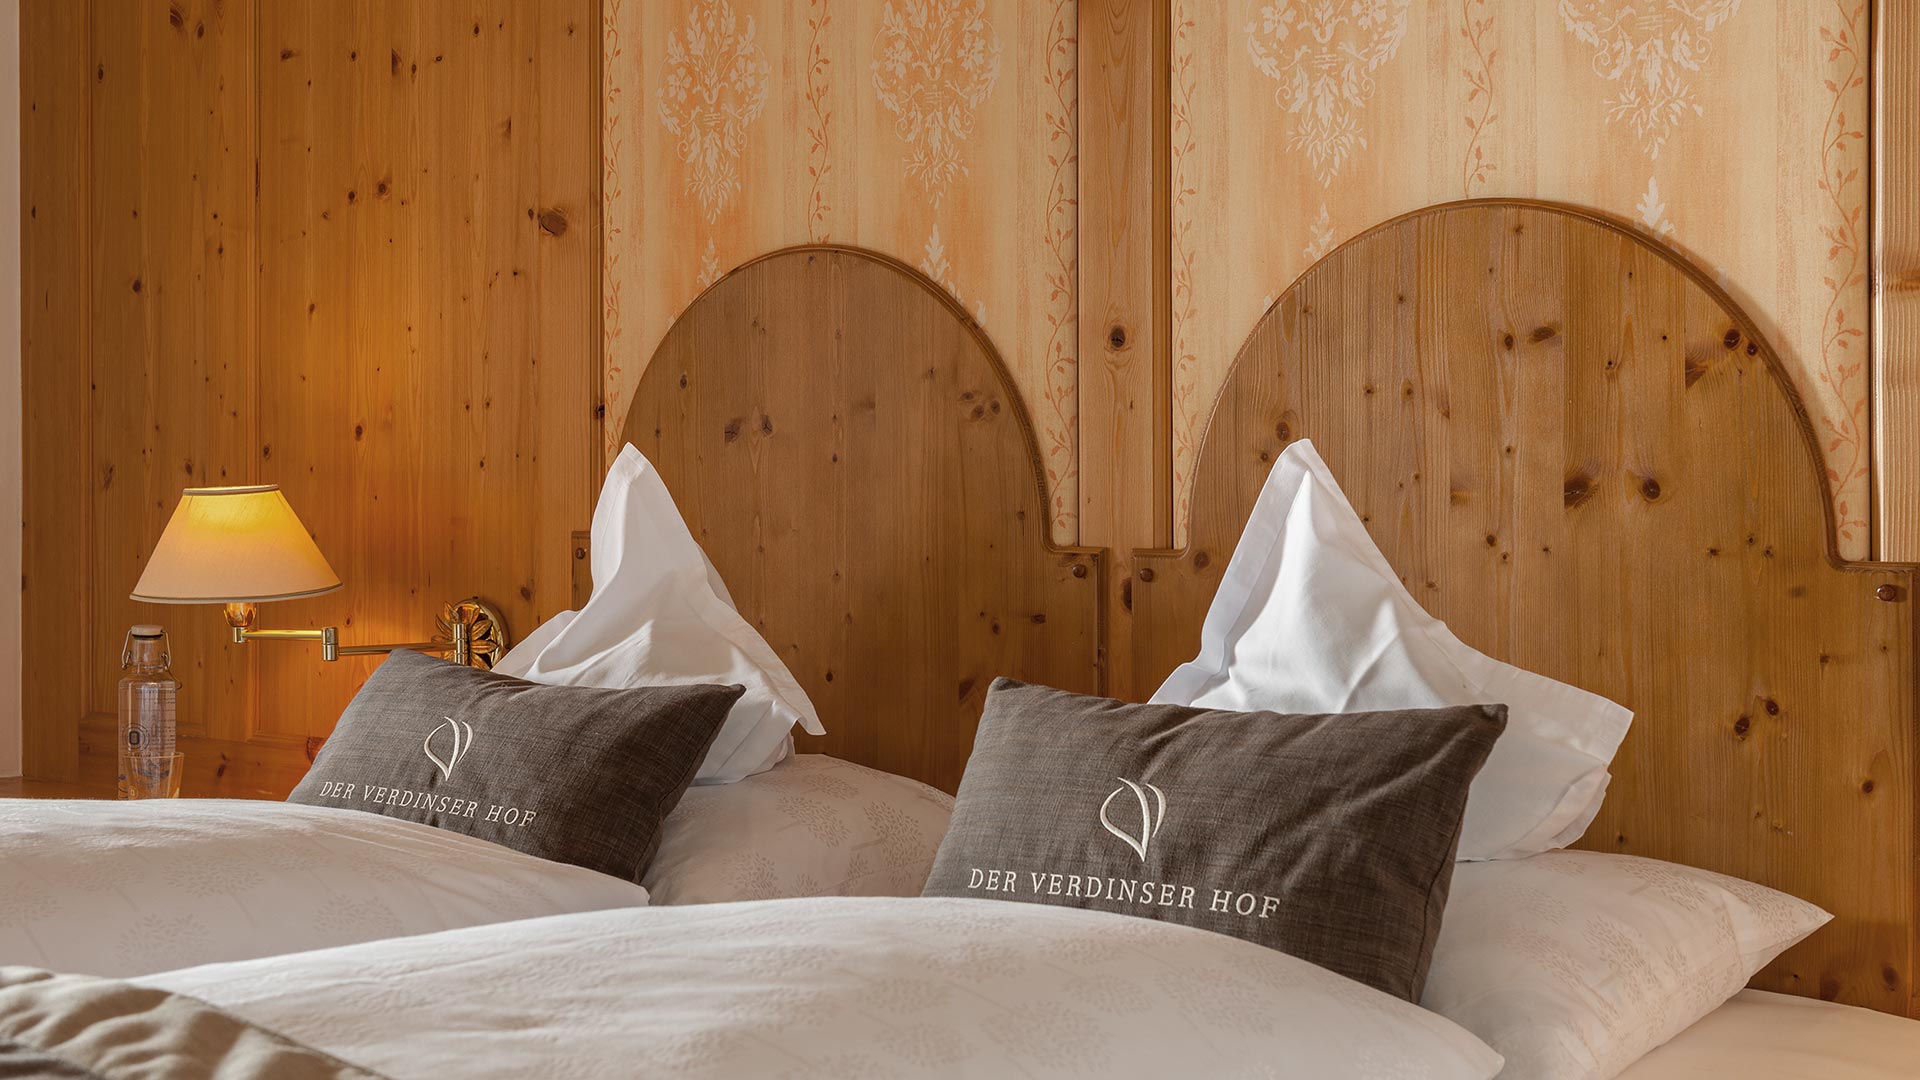 Al Verdinser Hof, vivrete l'emozione di respirare un'aria familiare che vi coccolerà durante tutta la vacanza in questo elegante hotel di Merano e dintorni.